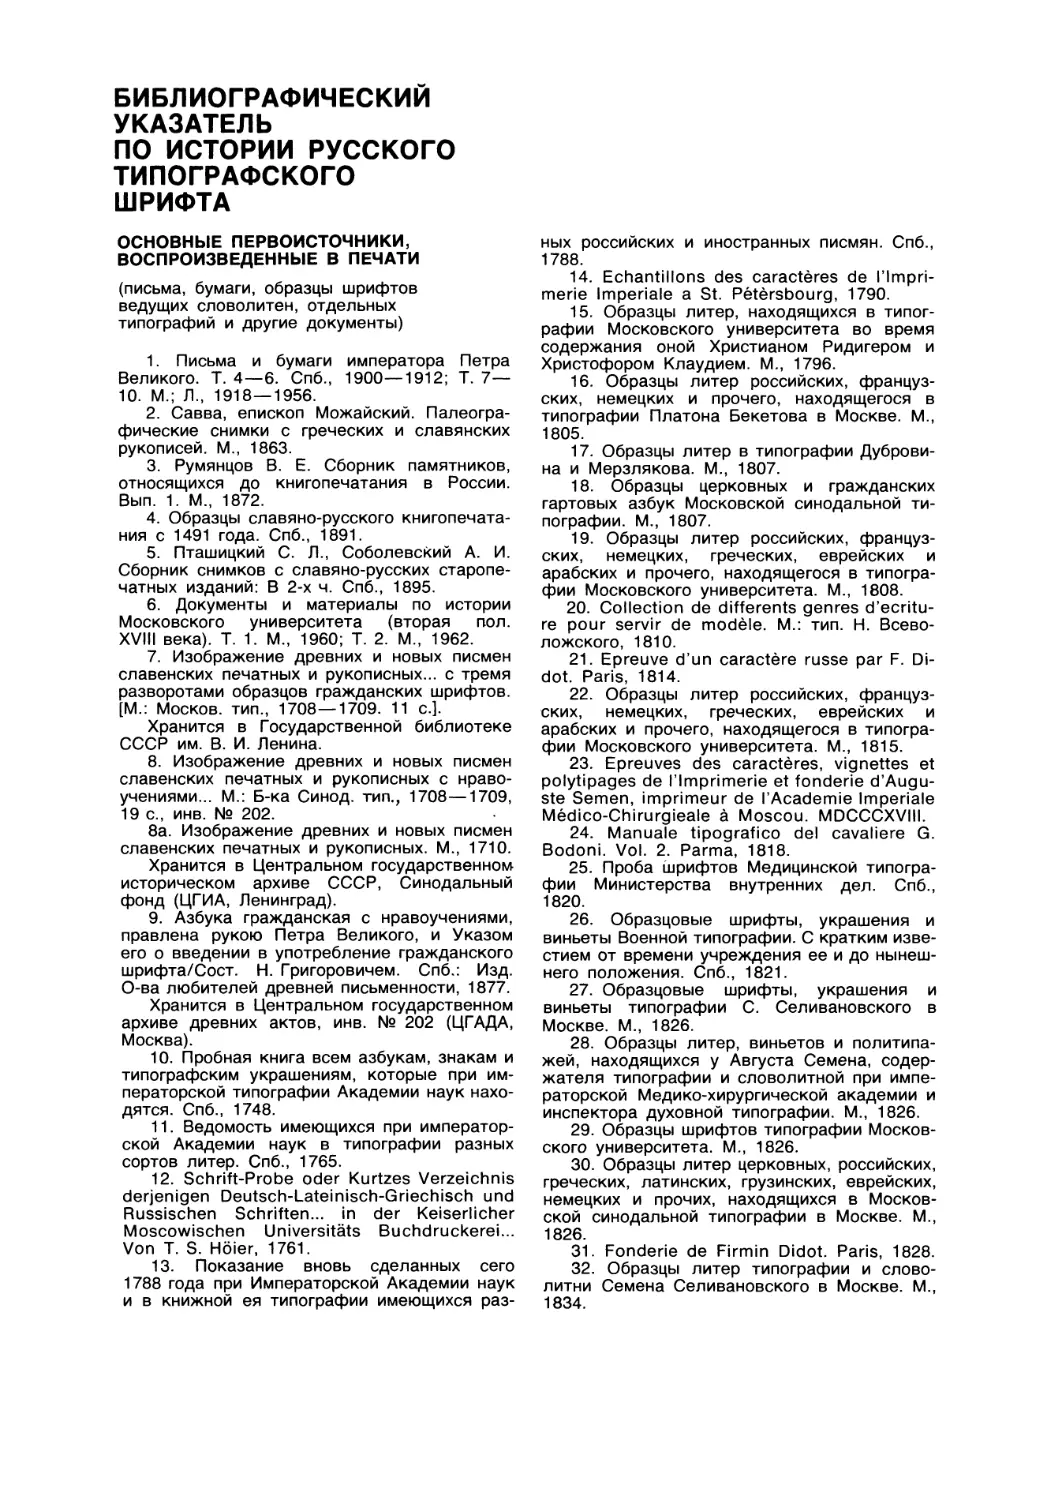 Библиографический указатель по истории русского типографского шрифта